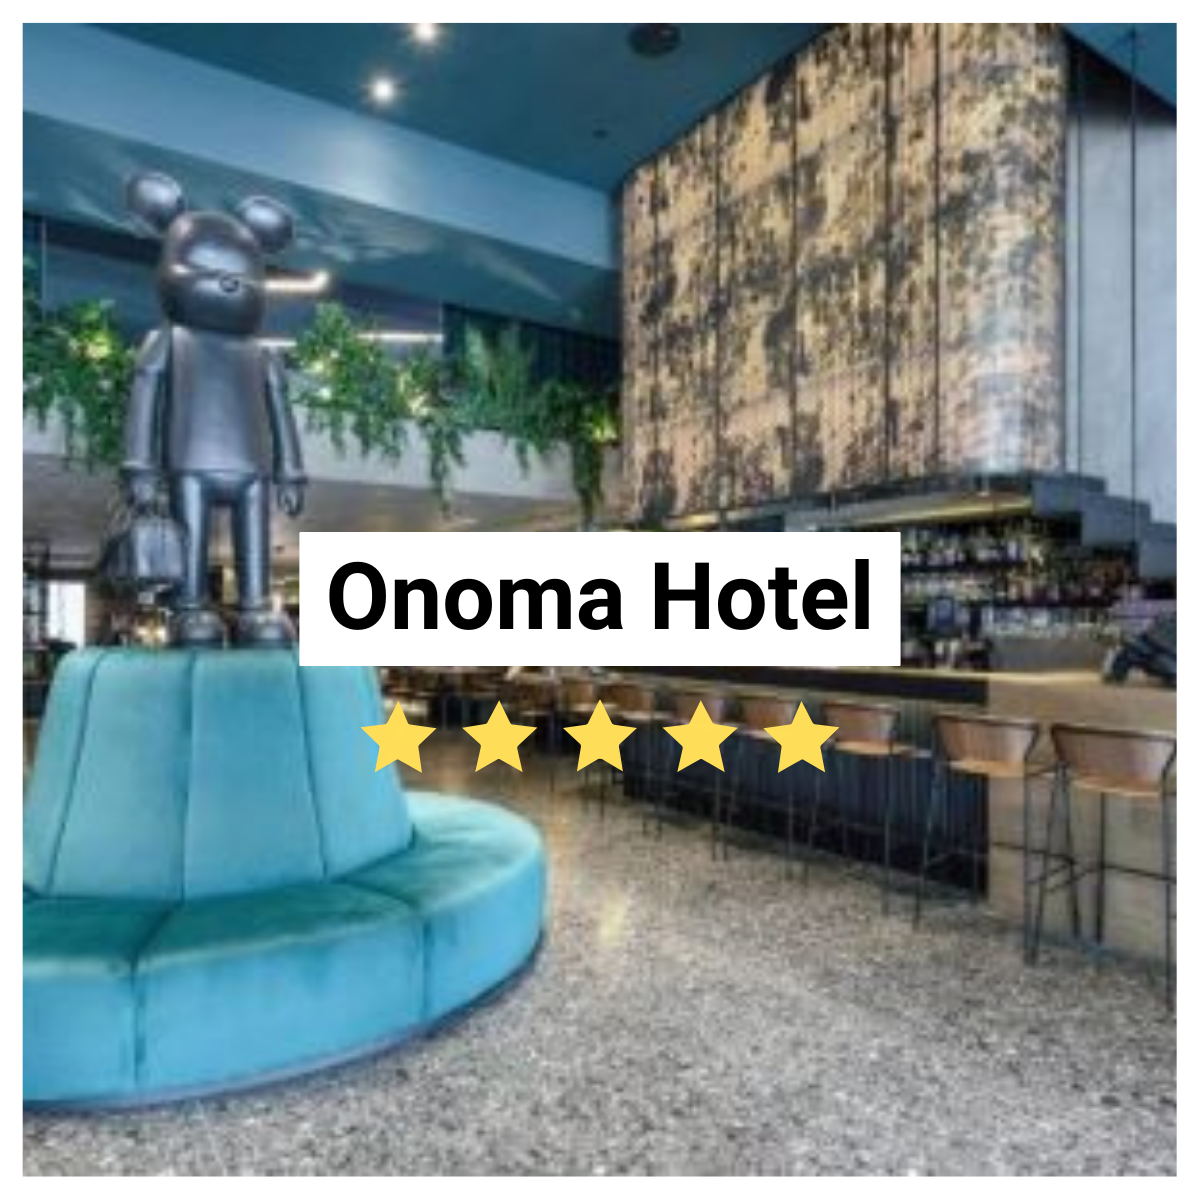 Onoma Hotel Image. 